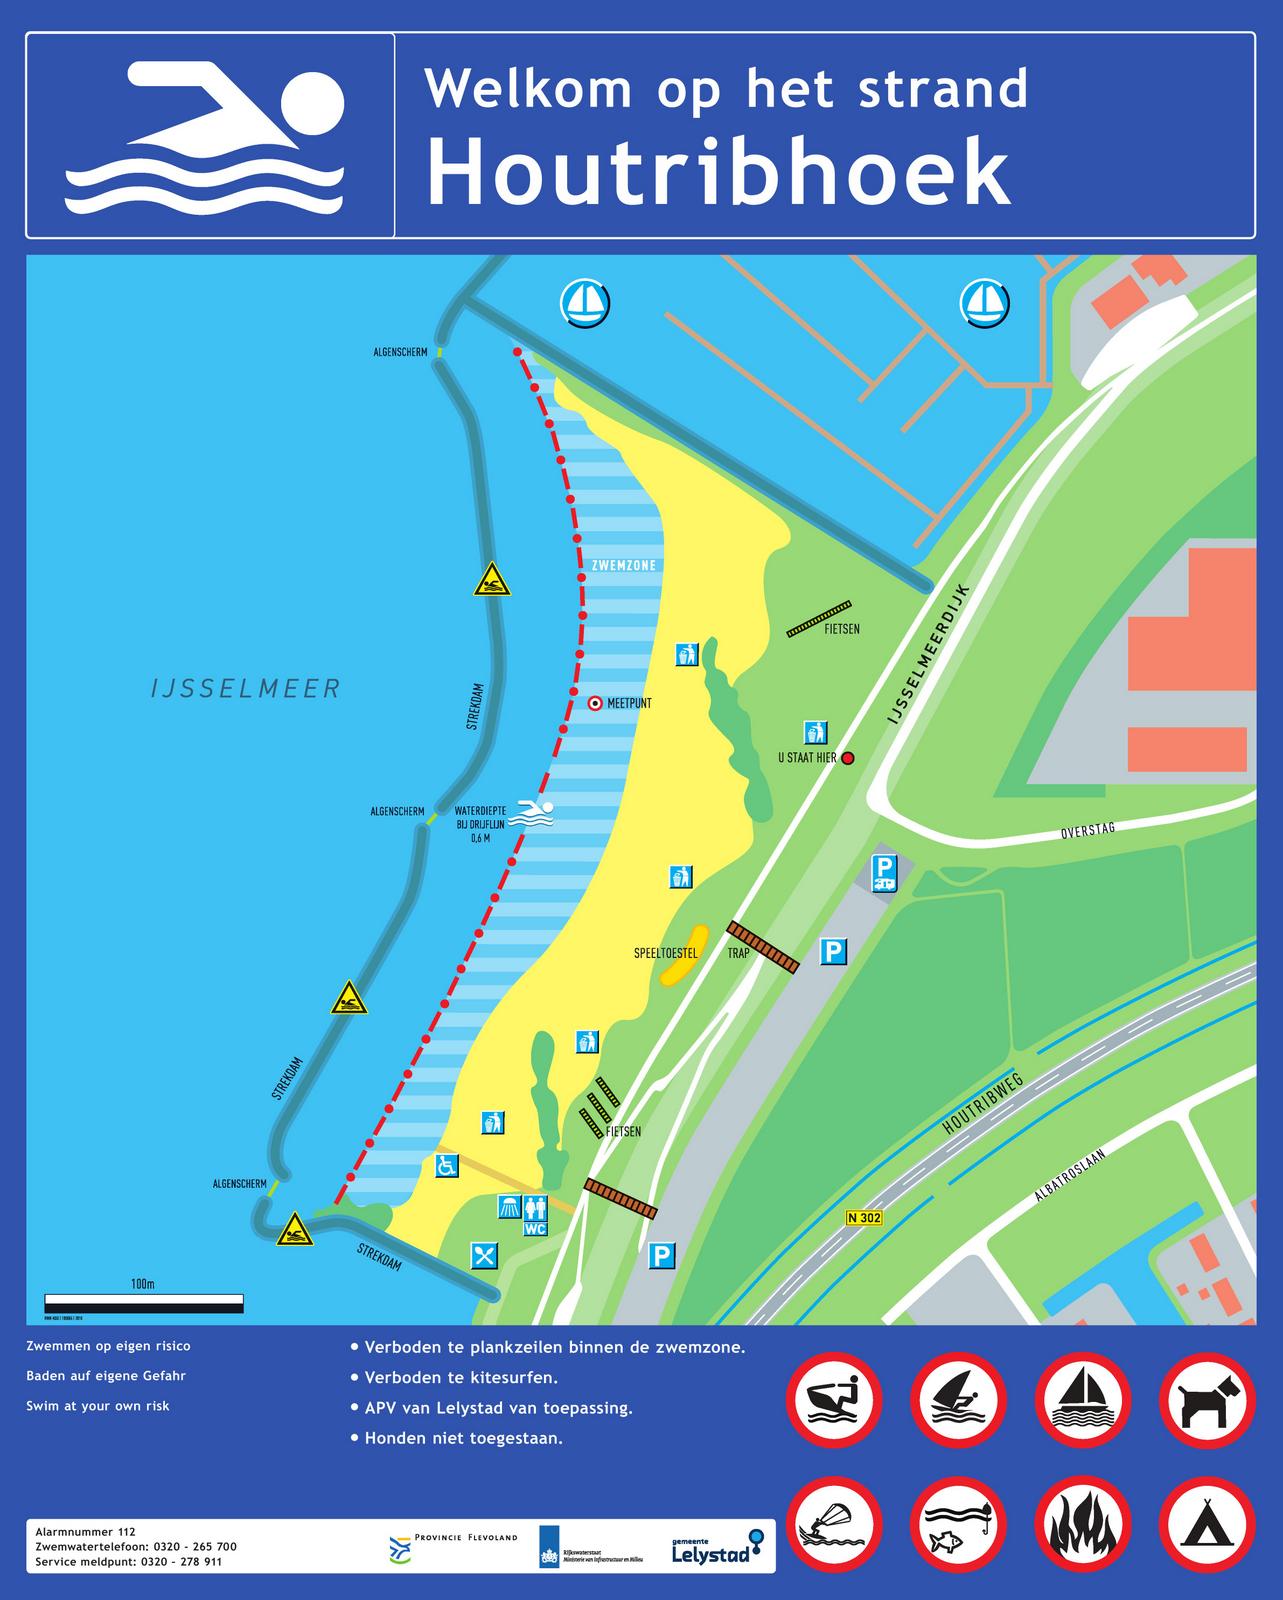 Het informatiebord bij zwemlocatie Houtribhoek